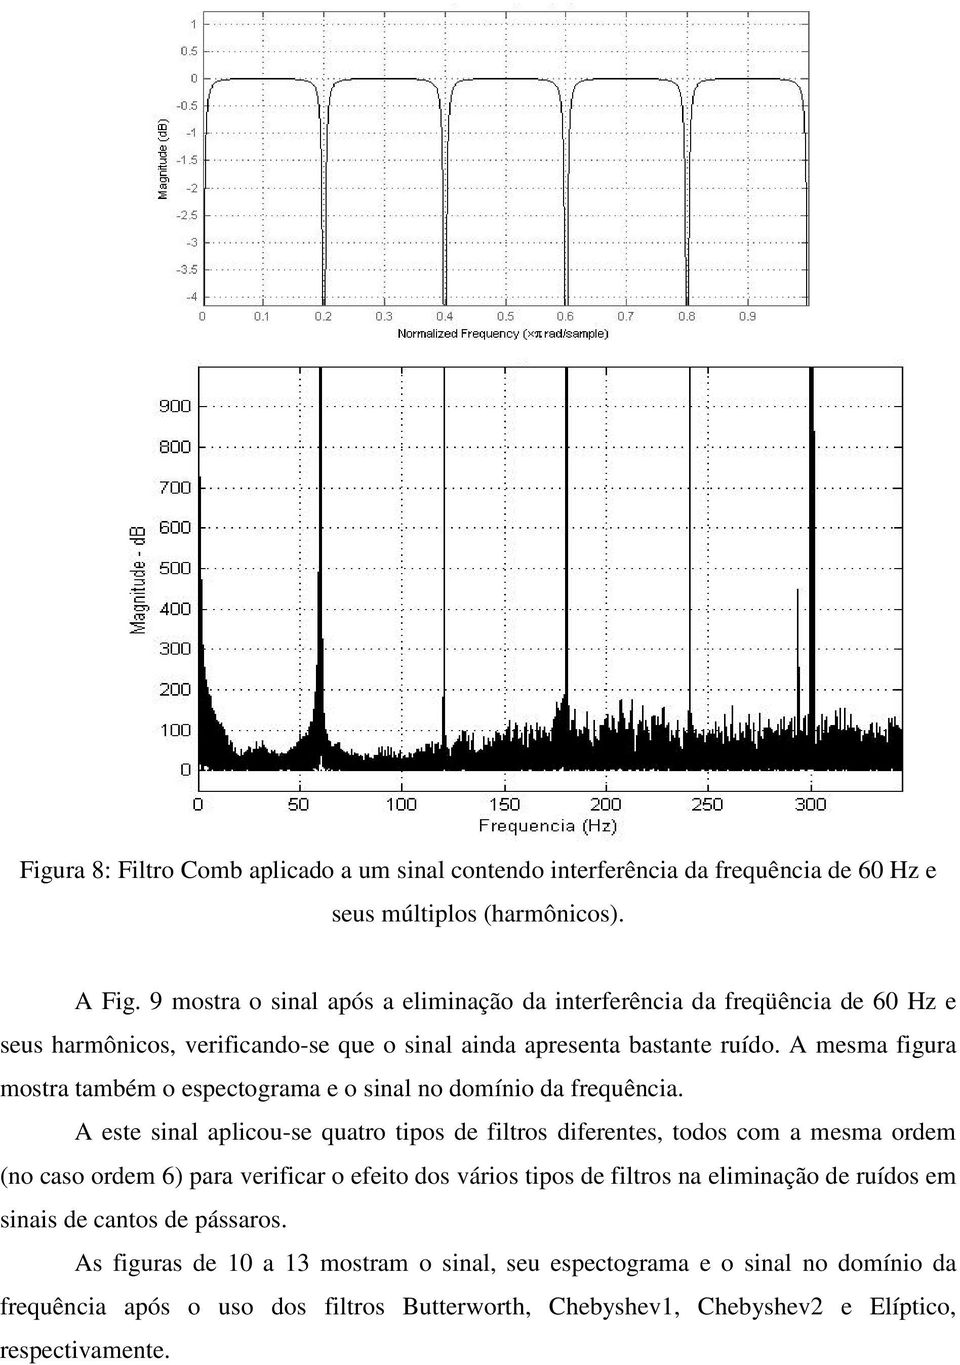 A mesma figura mostra também o espectograma e o sinal no domínio da frequência.